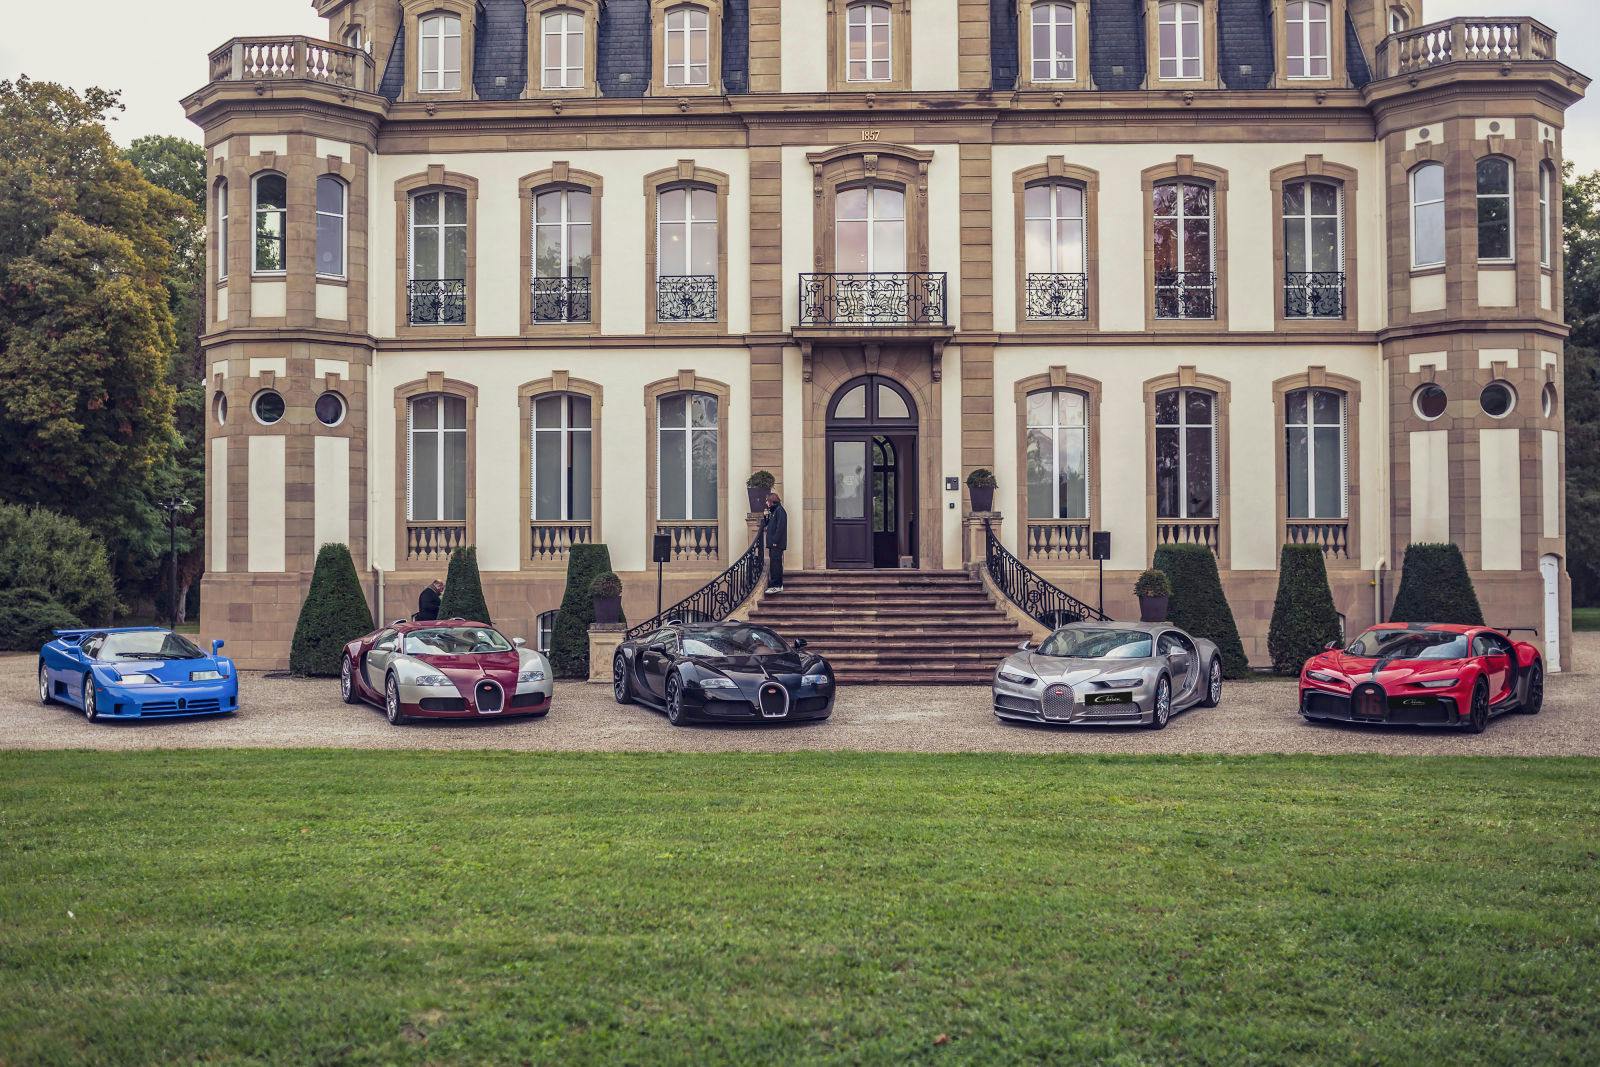 Sechs Bugatti-Kunden nahmen mit ihren Fahrzeugen am Bugatti Festival teil: zwei Veyron, ein Veyron Grand Sport, ein Chiron Sport und ein EB110.